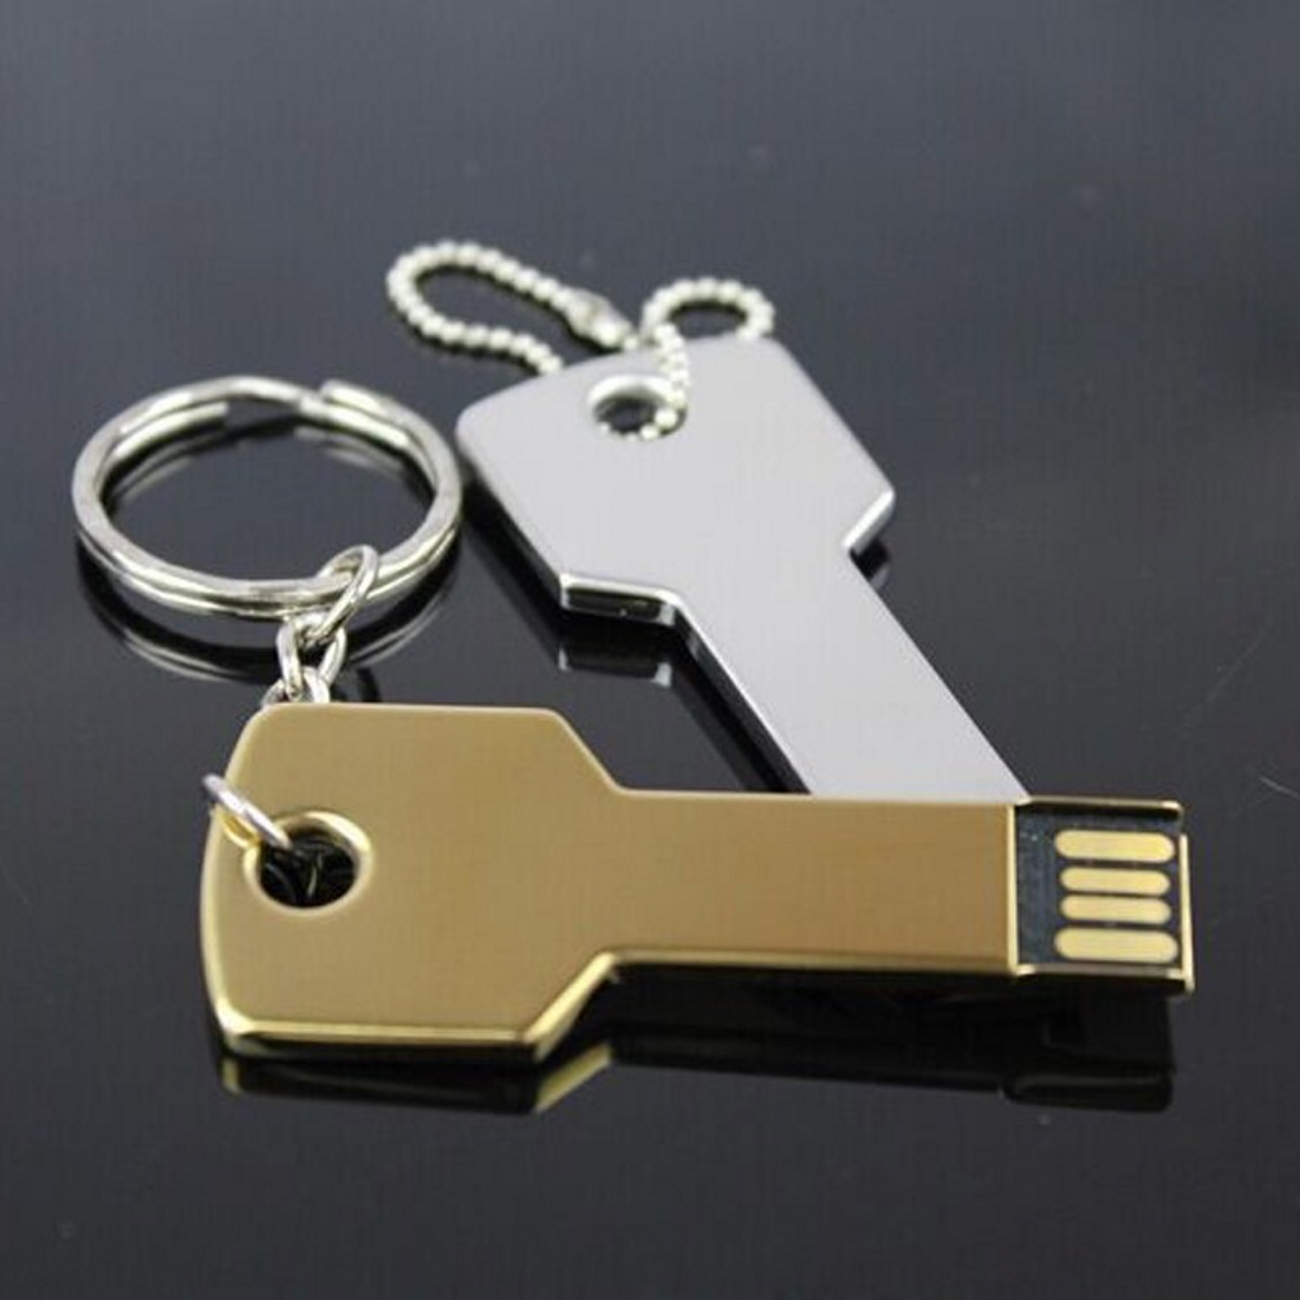 GB) USB Key 4GB (Gold, USB-Stick Gold 4 GERMANY